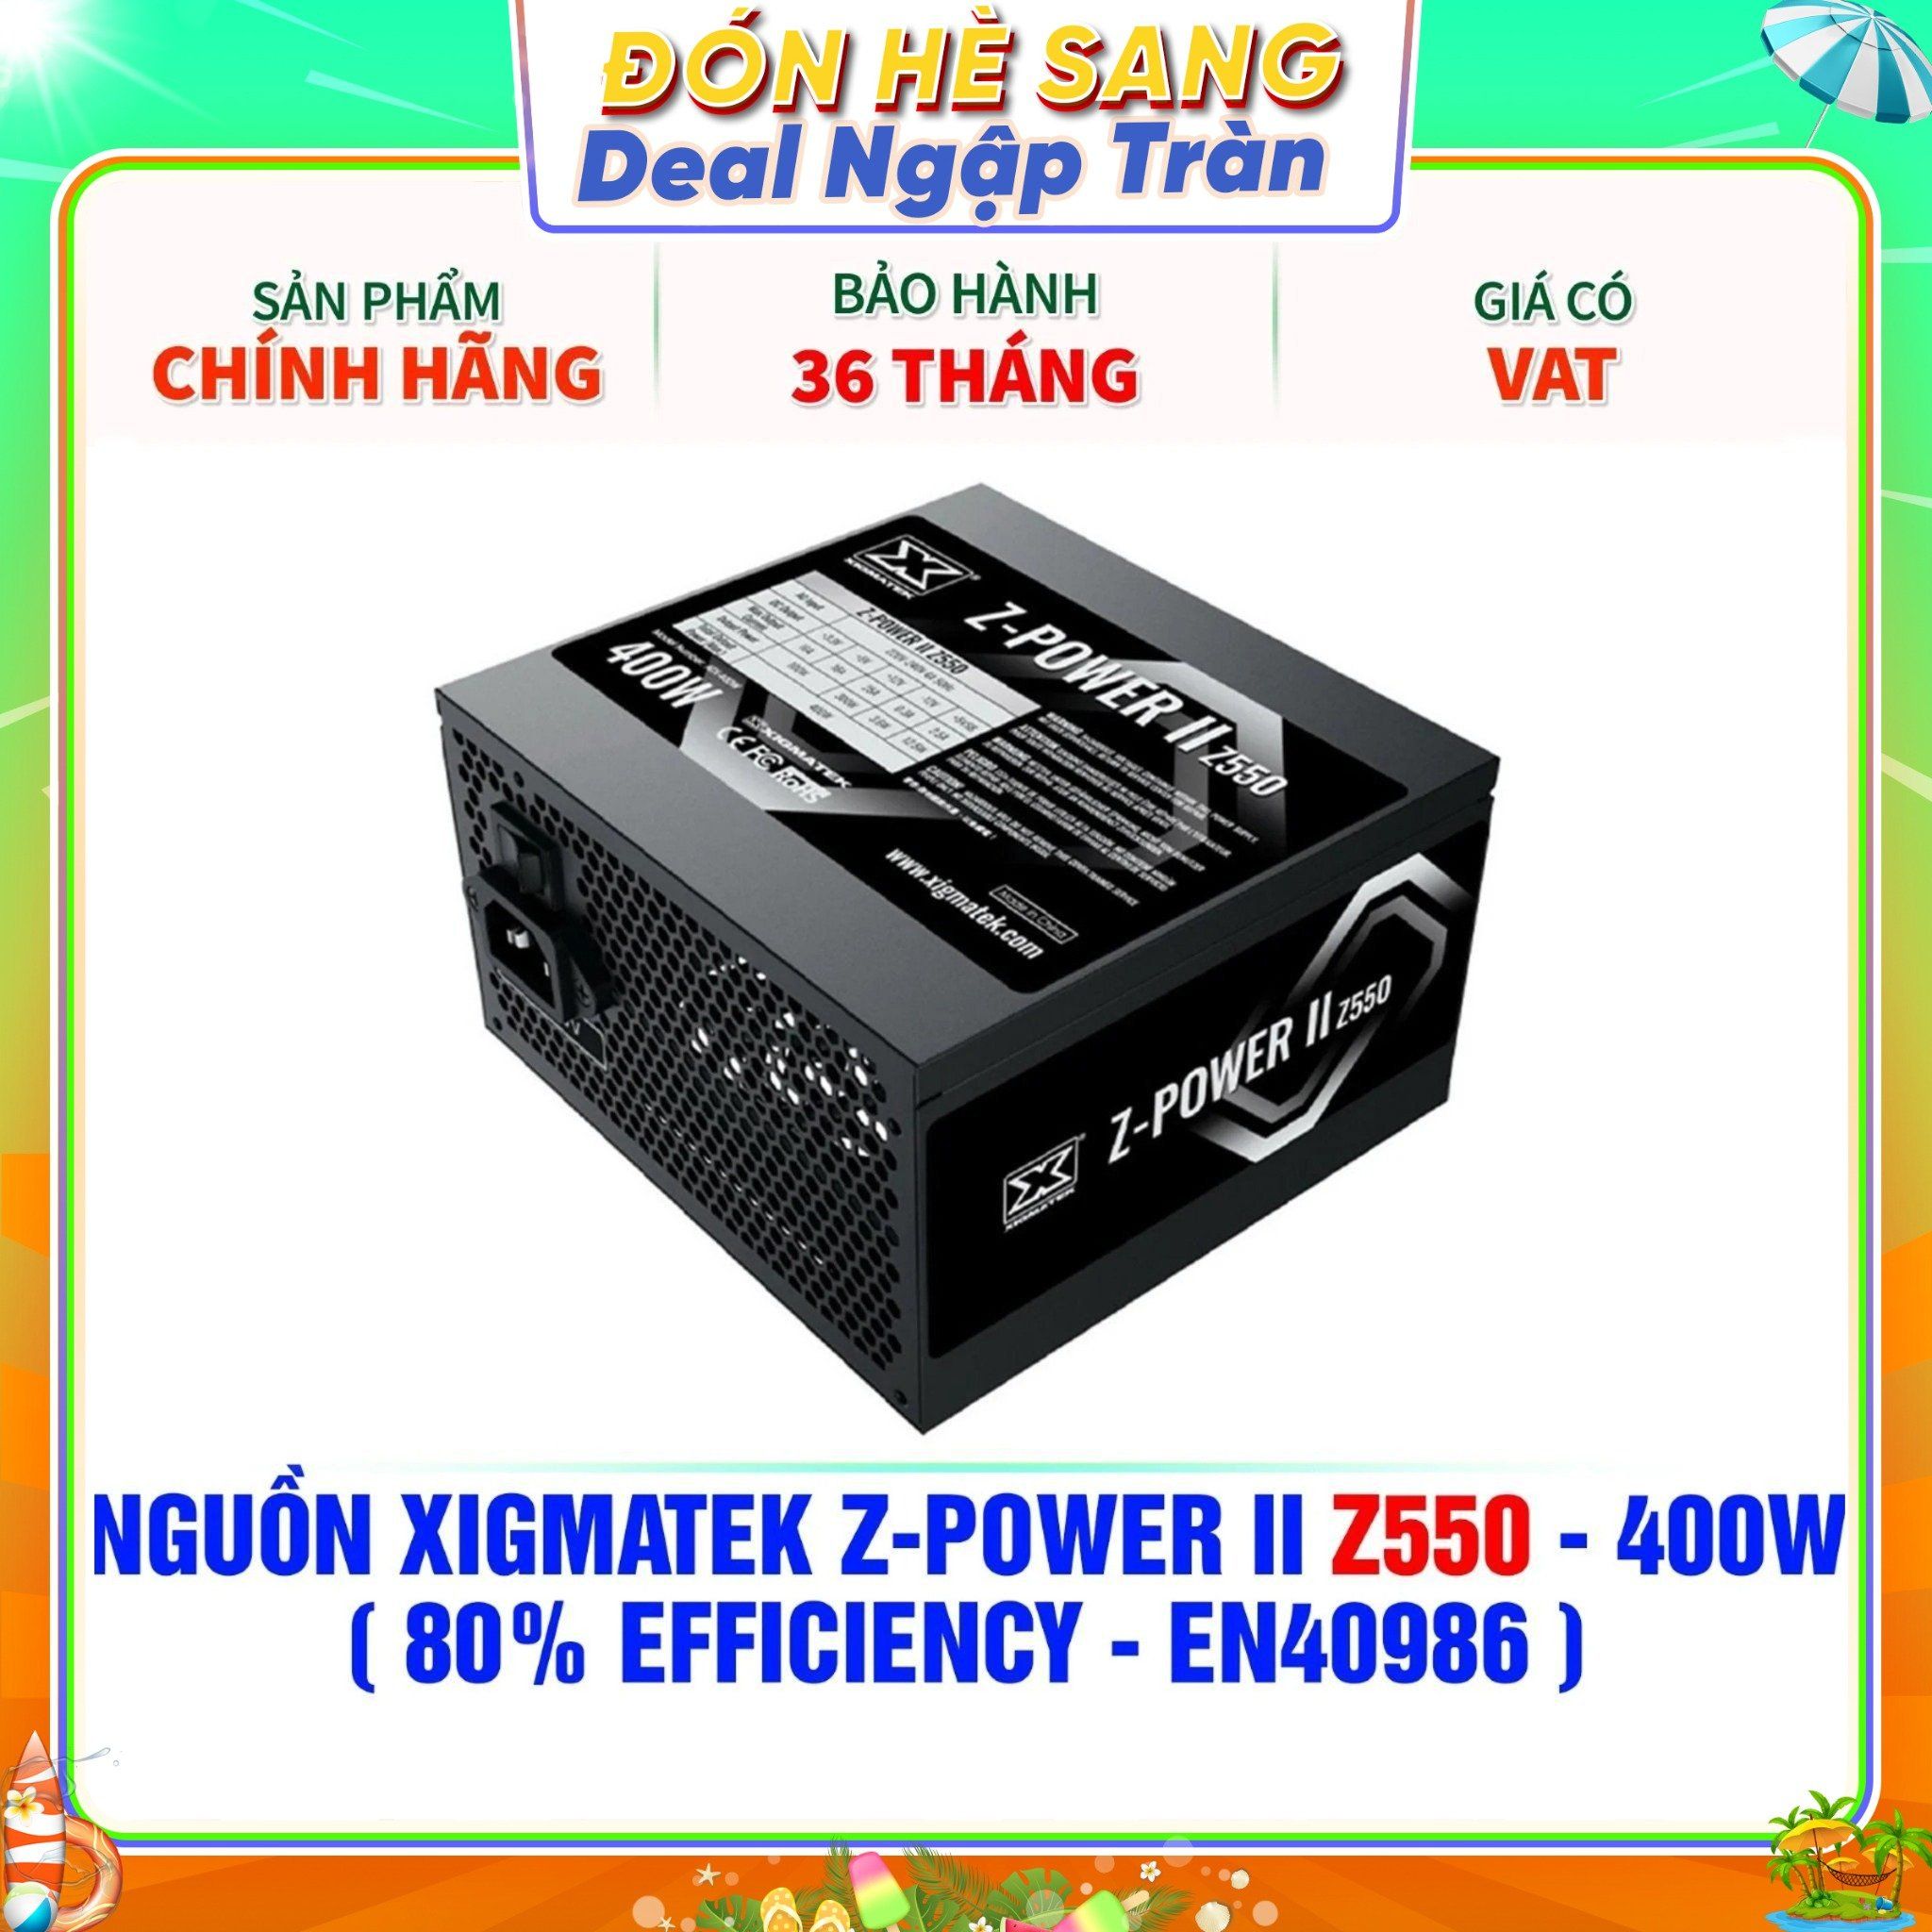  NGUỒN XIGMATEK Z-POWER II Z550 - 400W ( 80% EFFICIENCY - EN40986 ) 